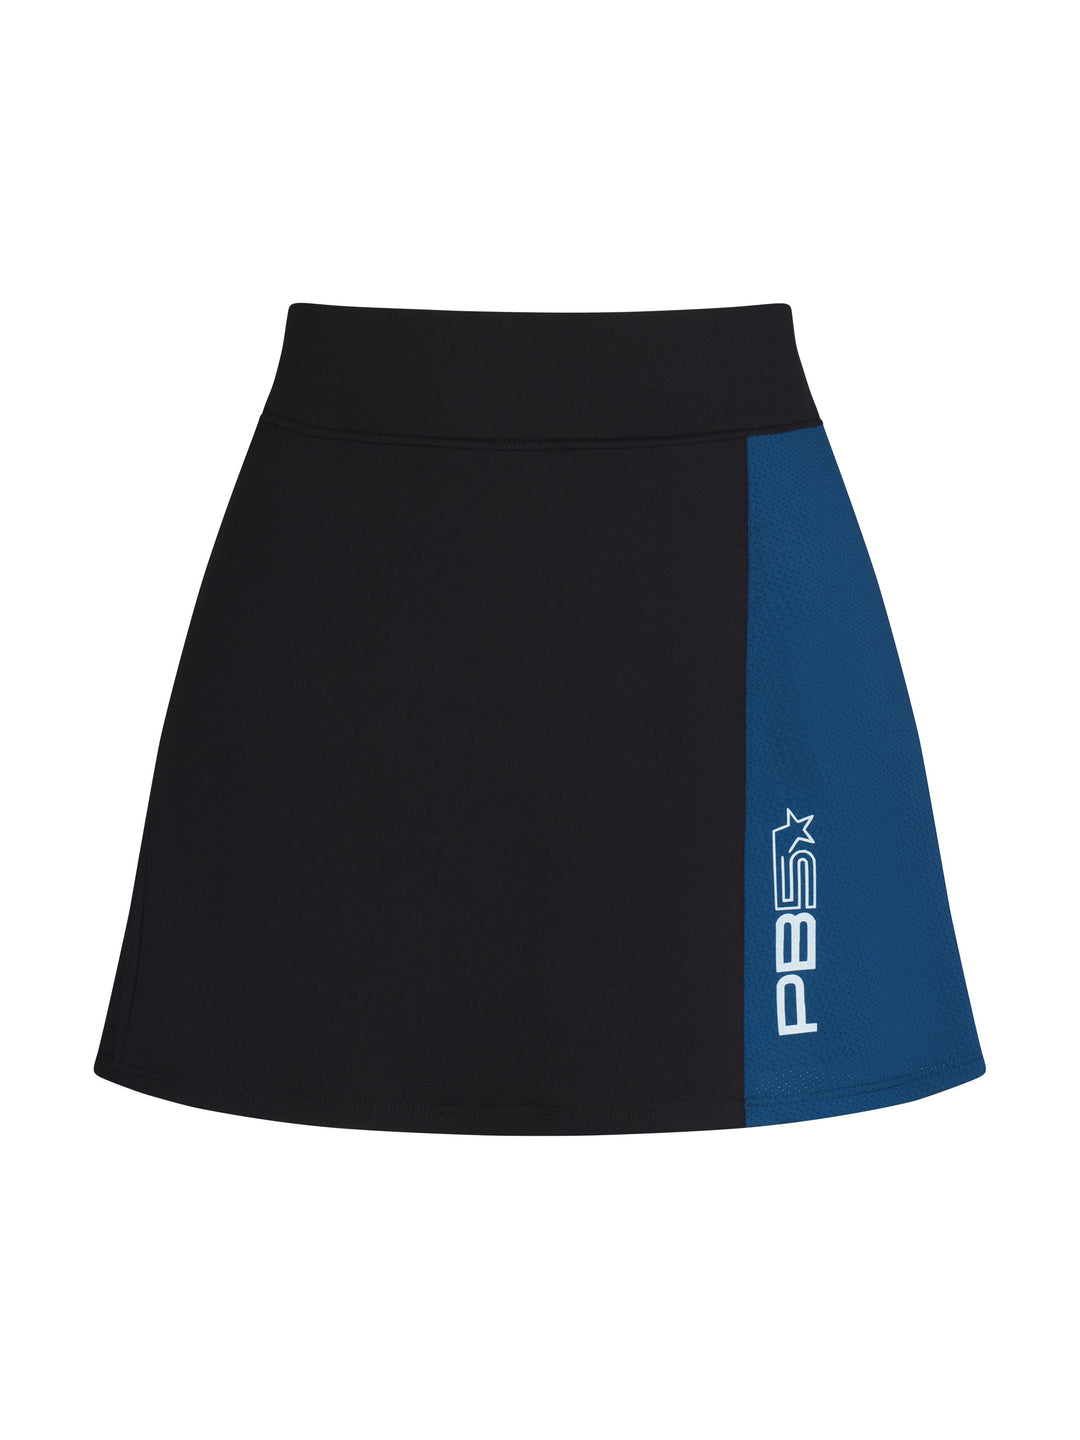 Mesh Panel Pickleball Skirt front view in Black and Astral Blue. Logo on bottom left side.